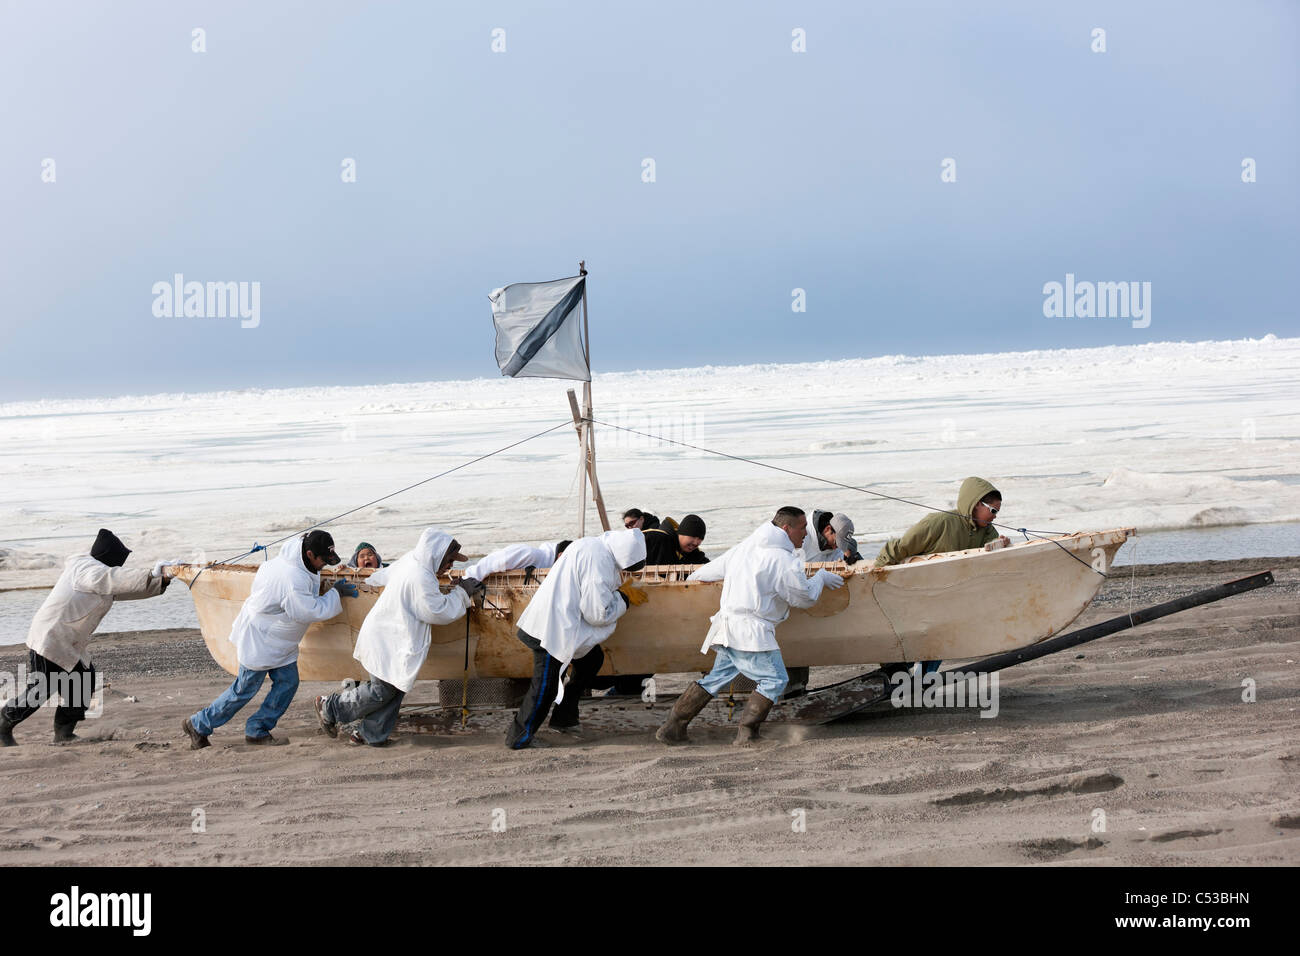 L'équipage de l'umiaq pousse leur chasse au large de la glace de mer Chuchki à la fin de la saison de chasse du printemps à Barrow, Alaska arctique, l'été Banque D'Images